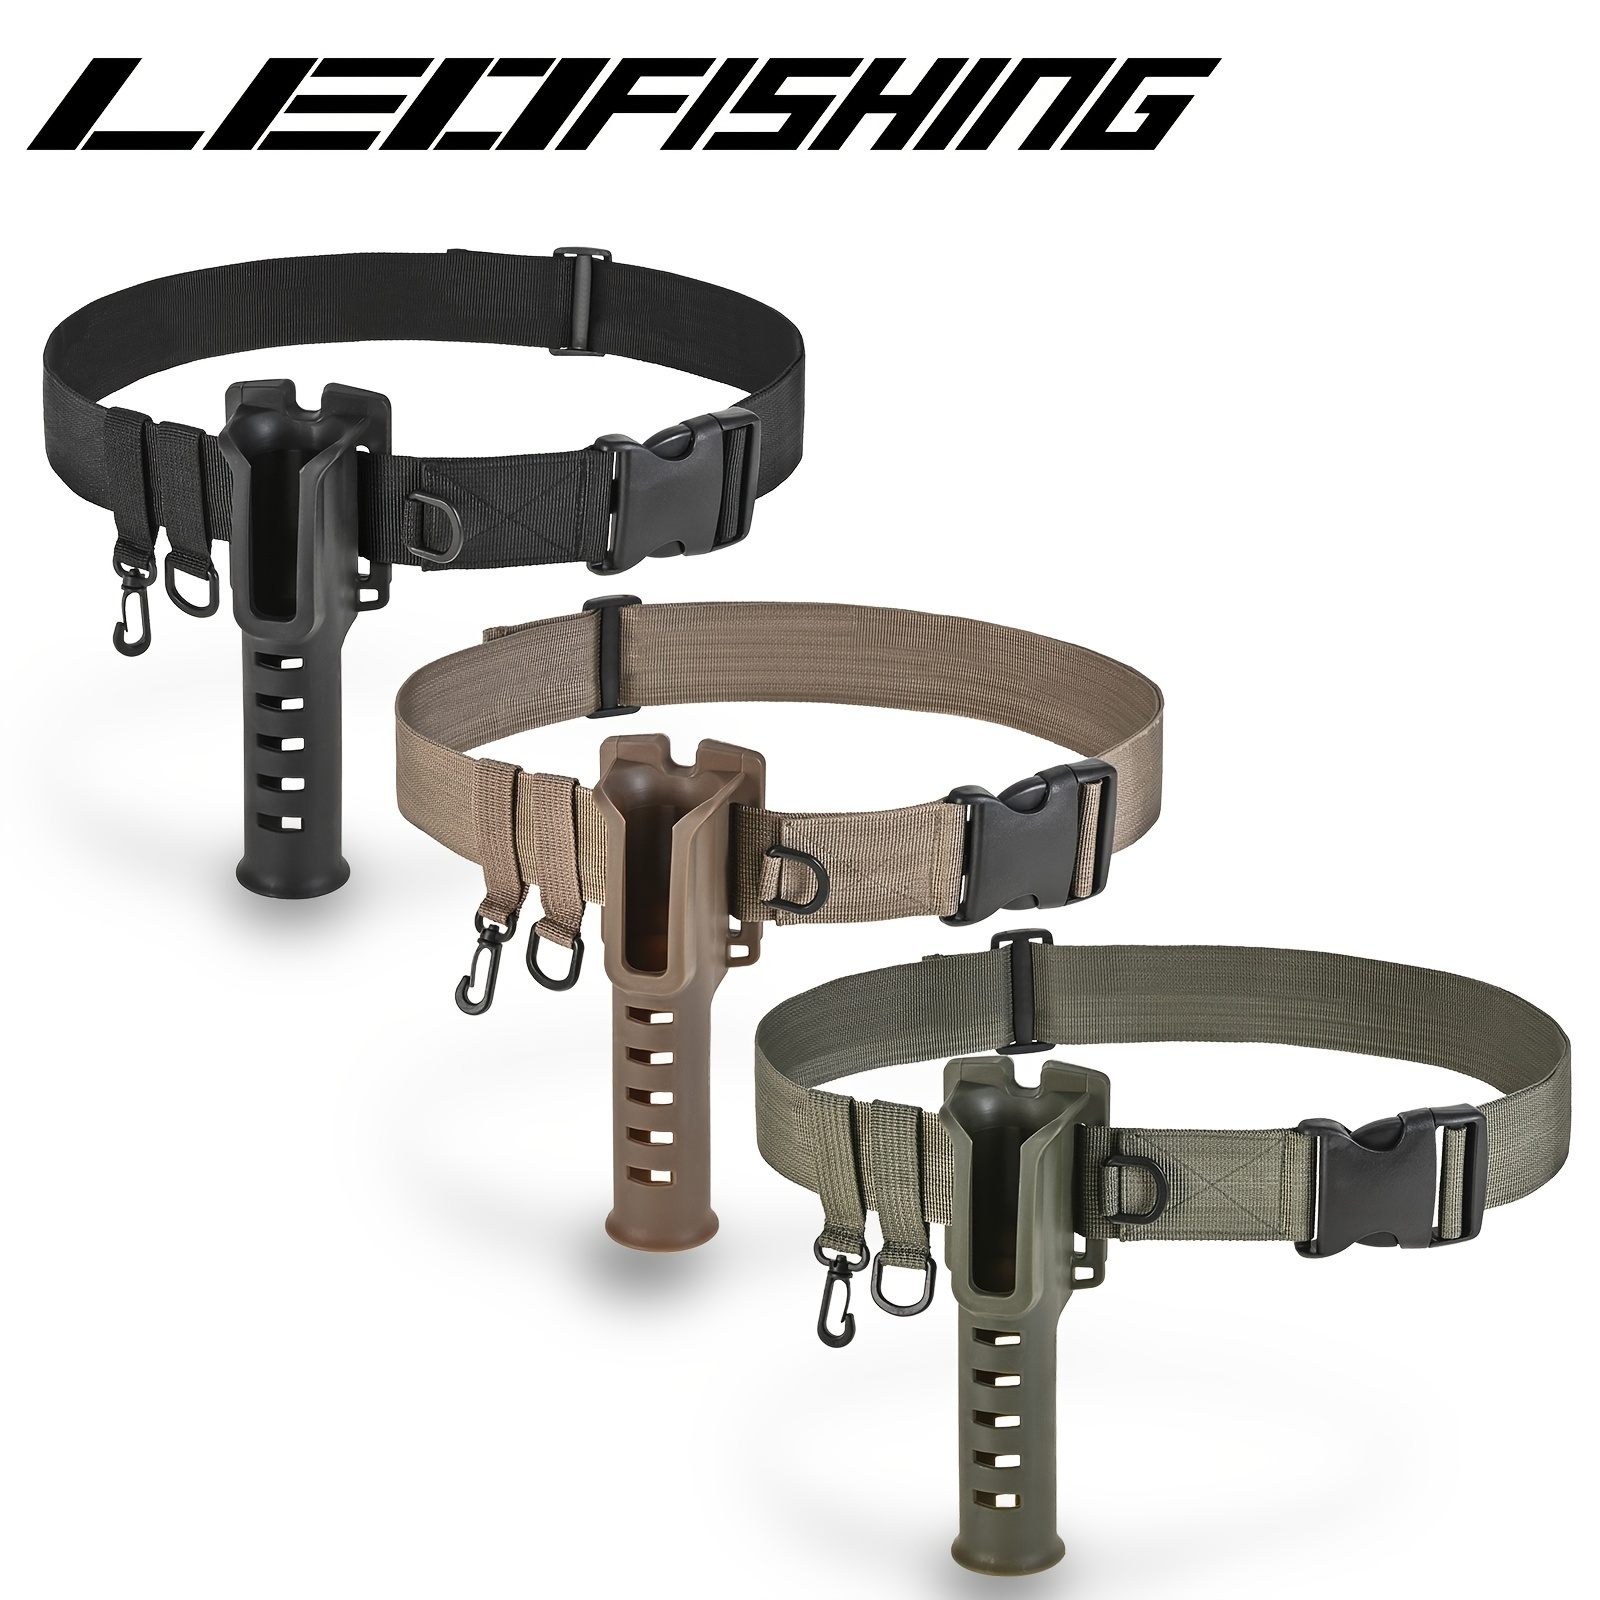 ON SALE!Loyerfyivos Fishing Rod Holder Belt ,Adjustable Waist